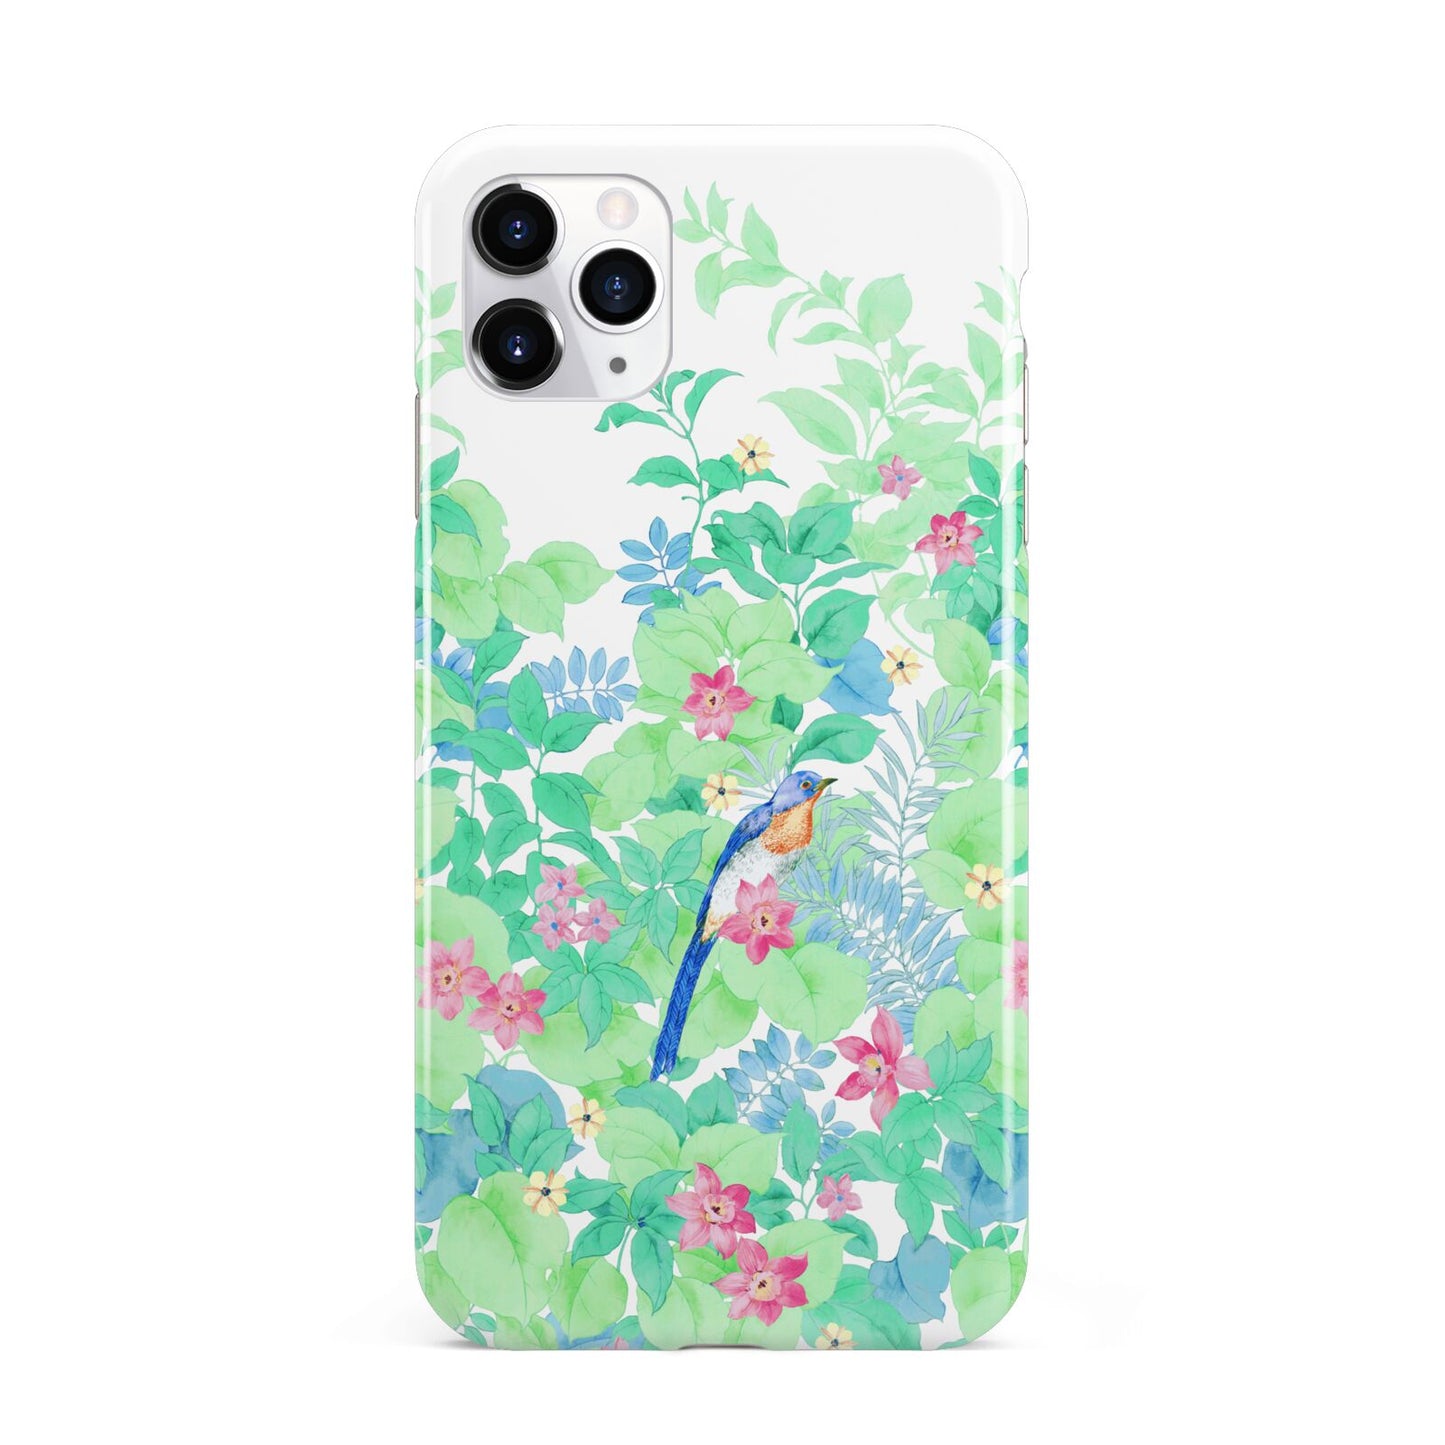 Watercolour Floral iPhone 11 Pro Max 3D Tough Case